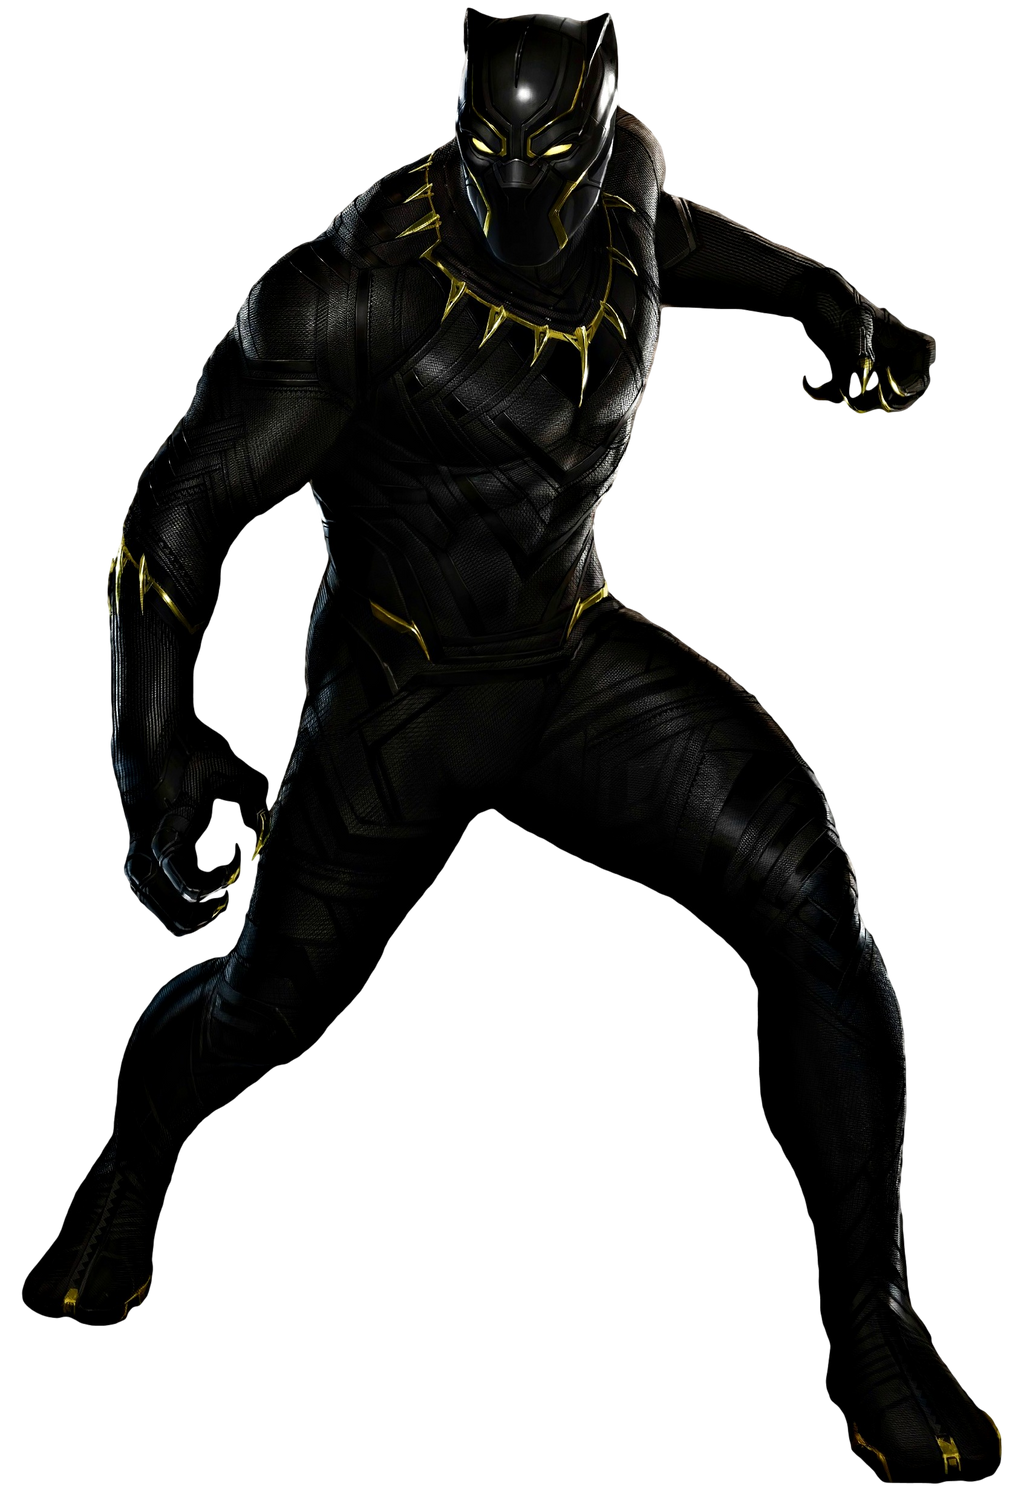 Black Panther - Transparent Background! by Camo-Flauge on DeviantArt